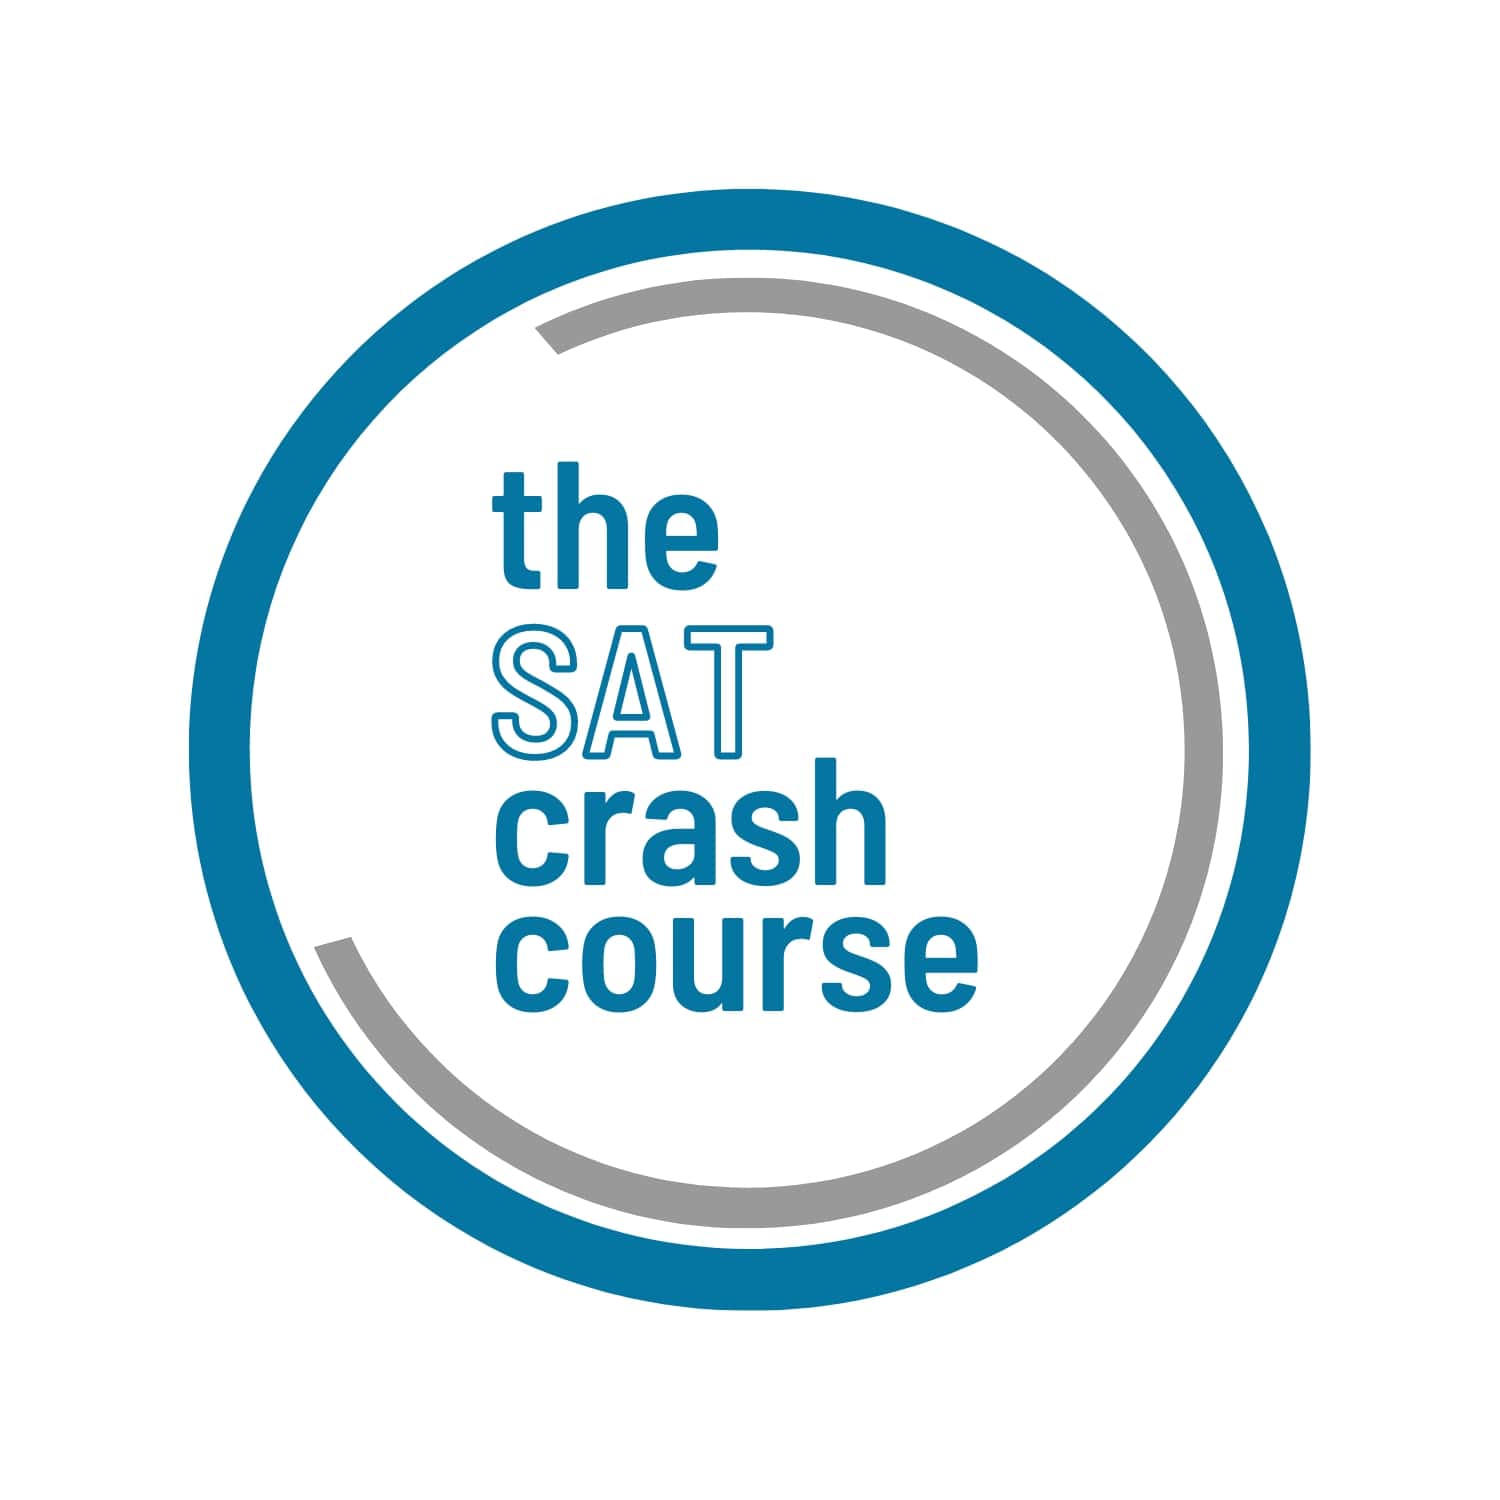 The SAT Crash Course